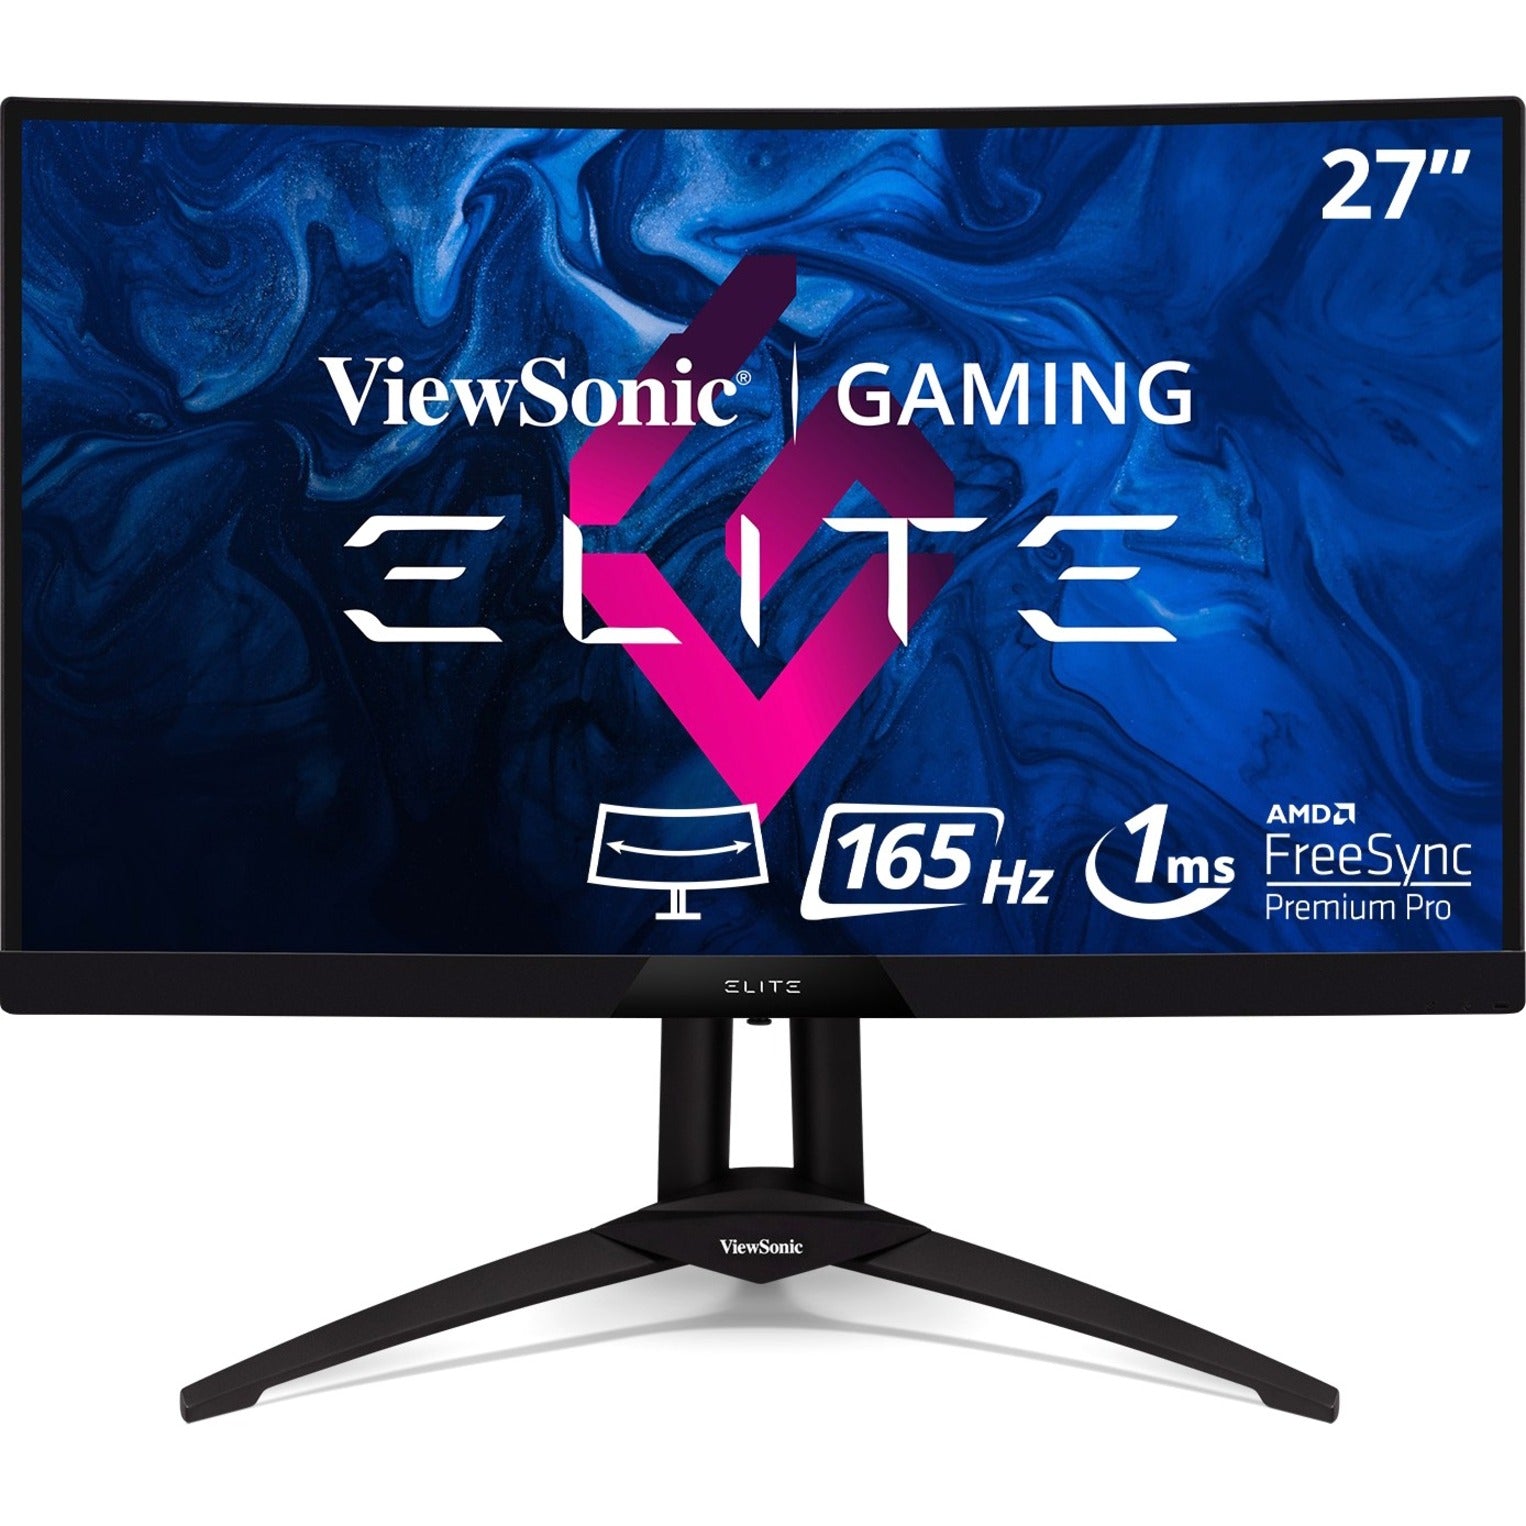 ViewSonic XG270QC Elite 27" WQHD Curved Gaming Monitor, 165Hz, FreeSync Premium Pro